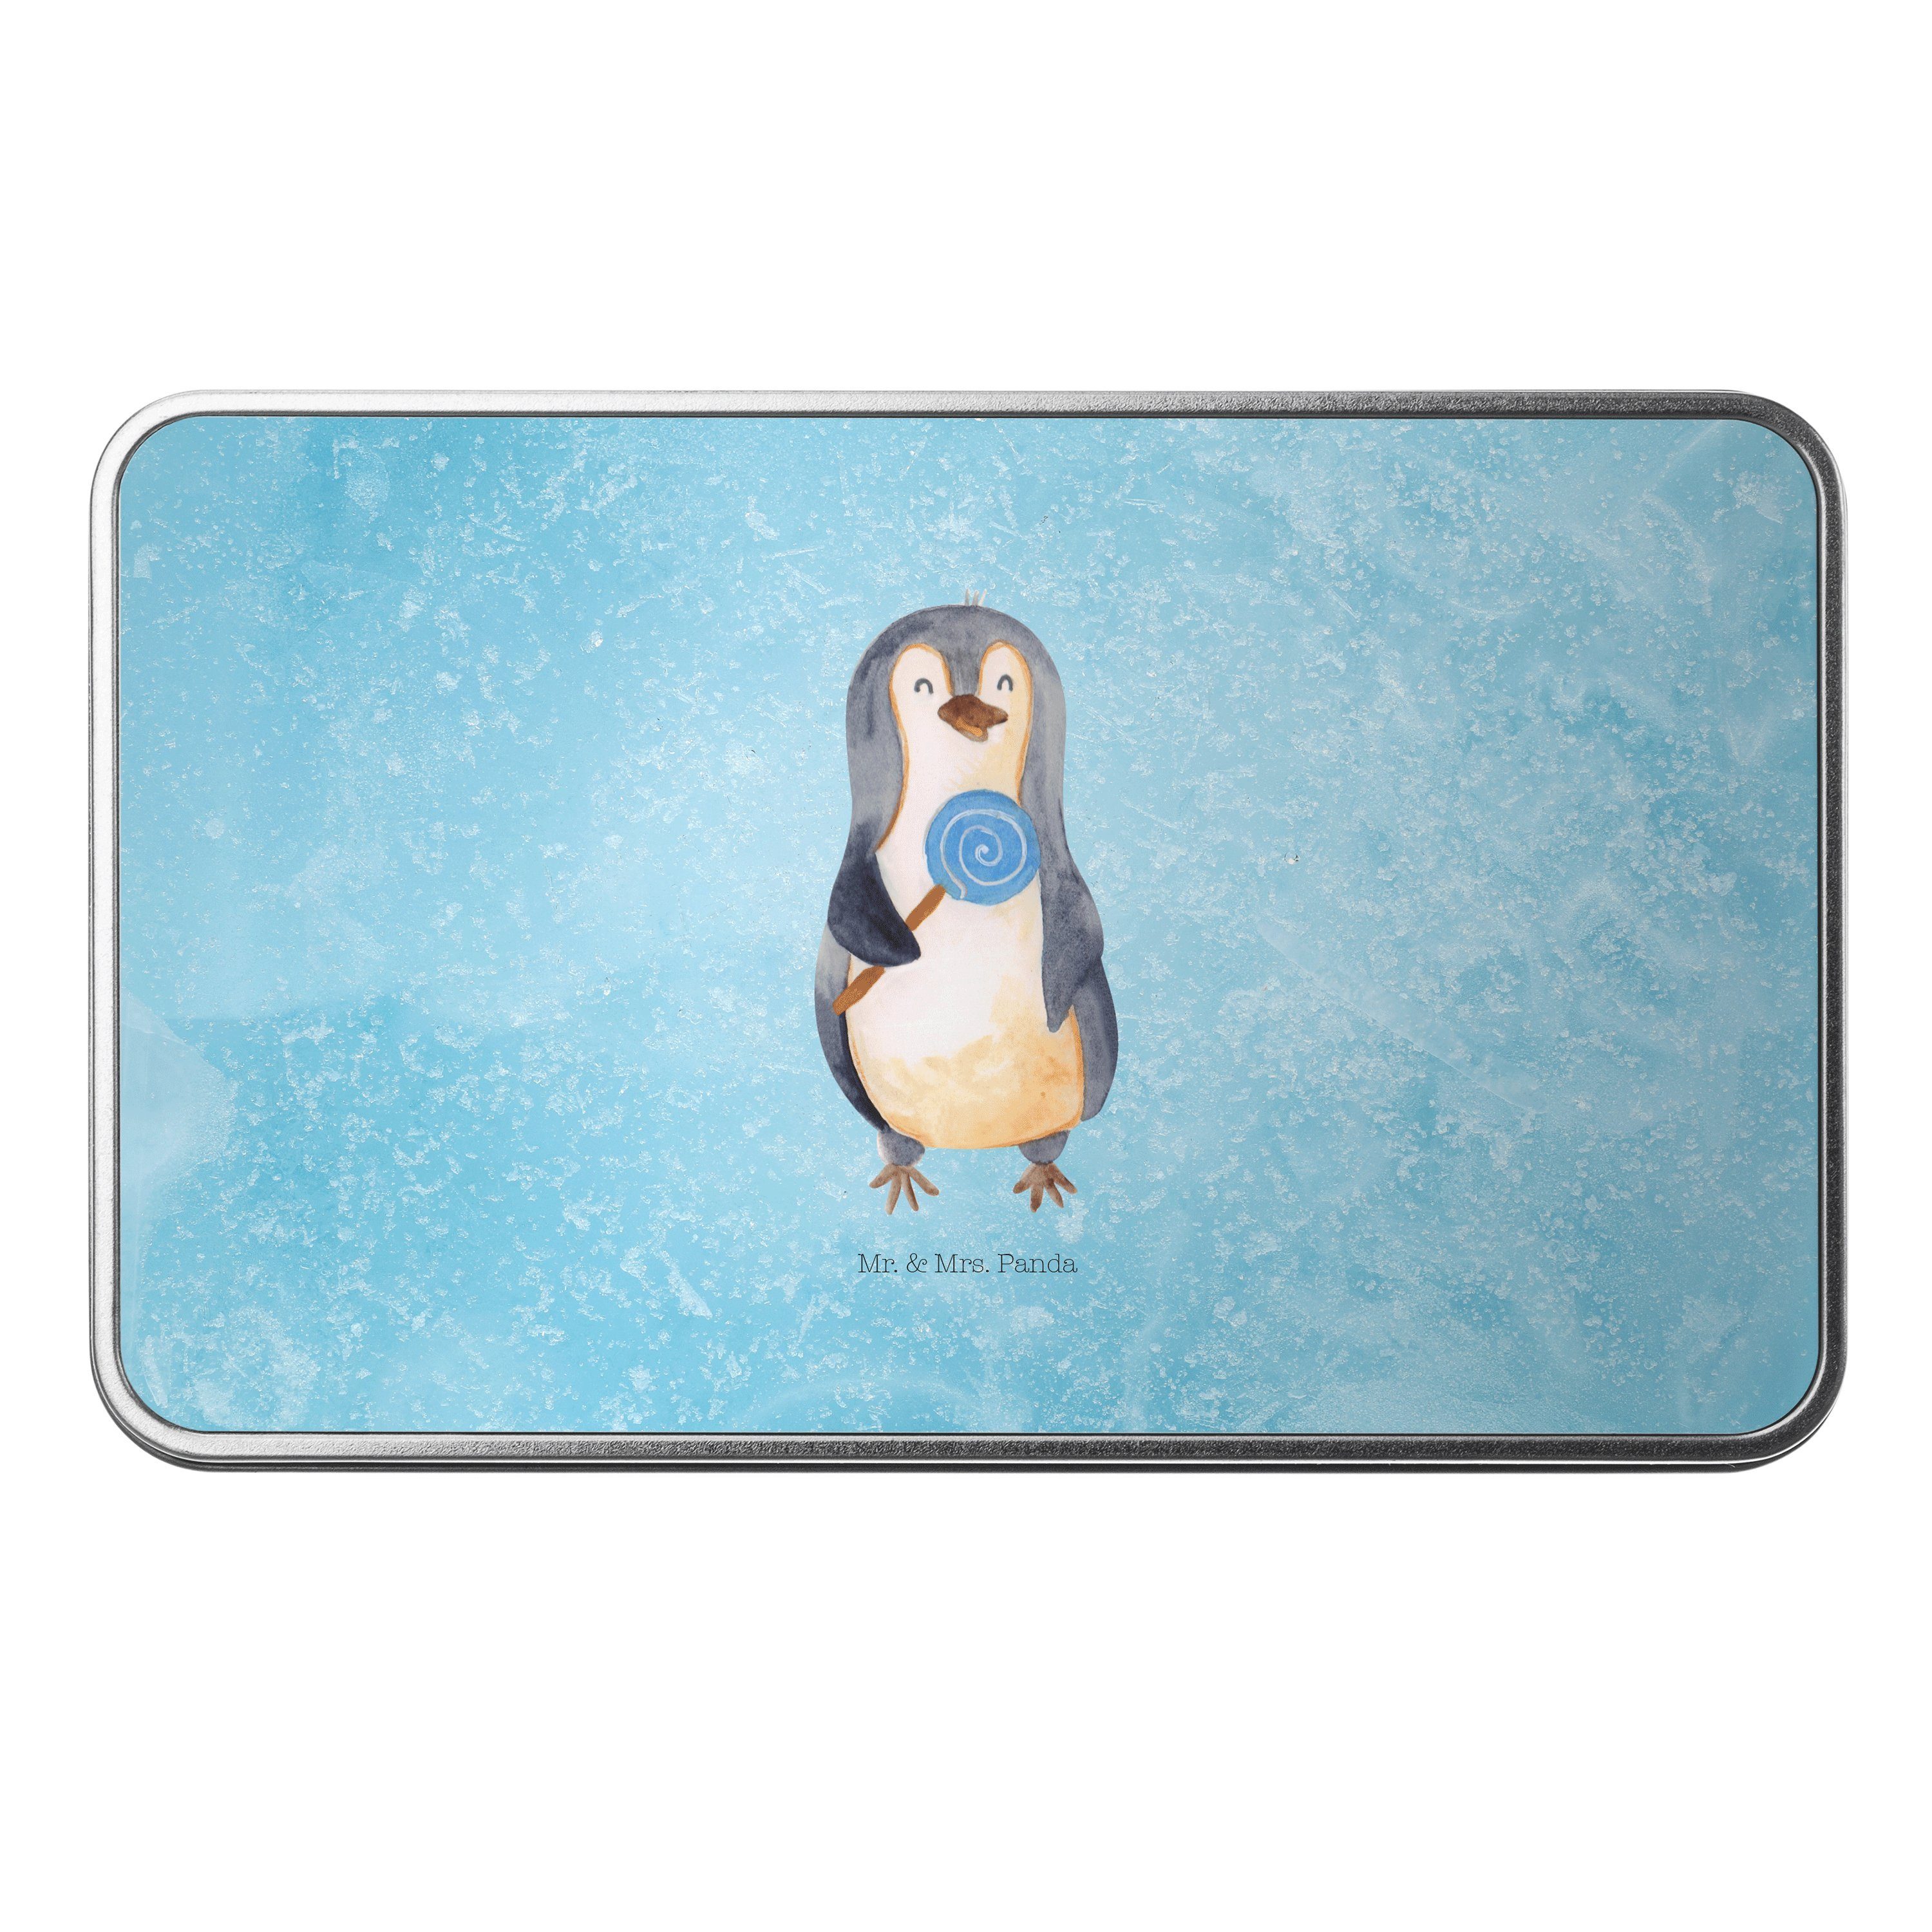 Mr. & Mrs. Panda Dose Pinguin Lolli - Eisblau - Geschenk, naschen, Süßigkeiten, Kind, Gaune (1 St)